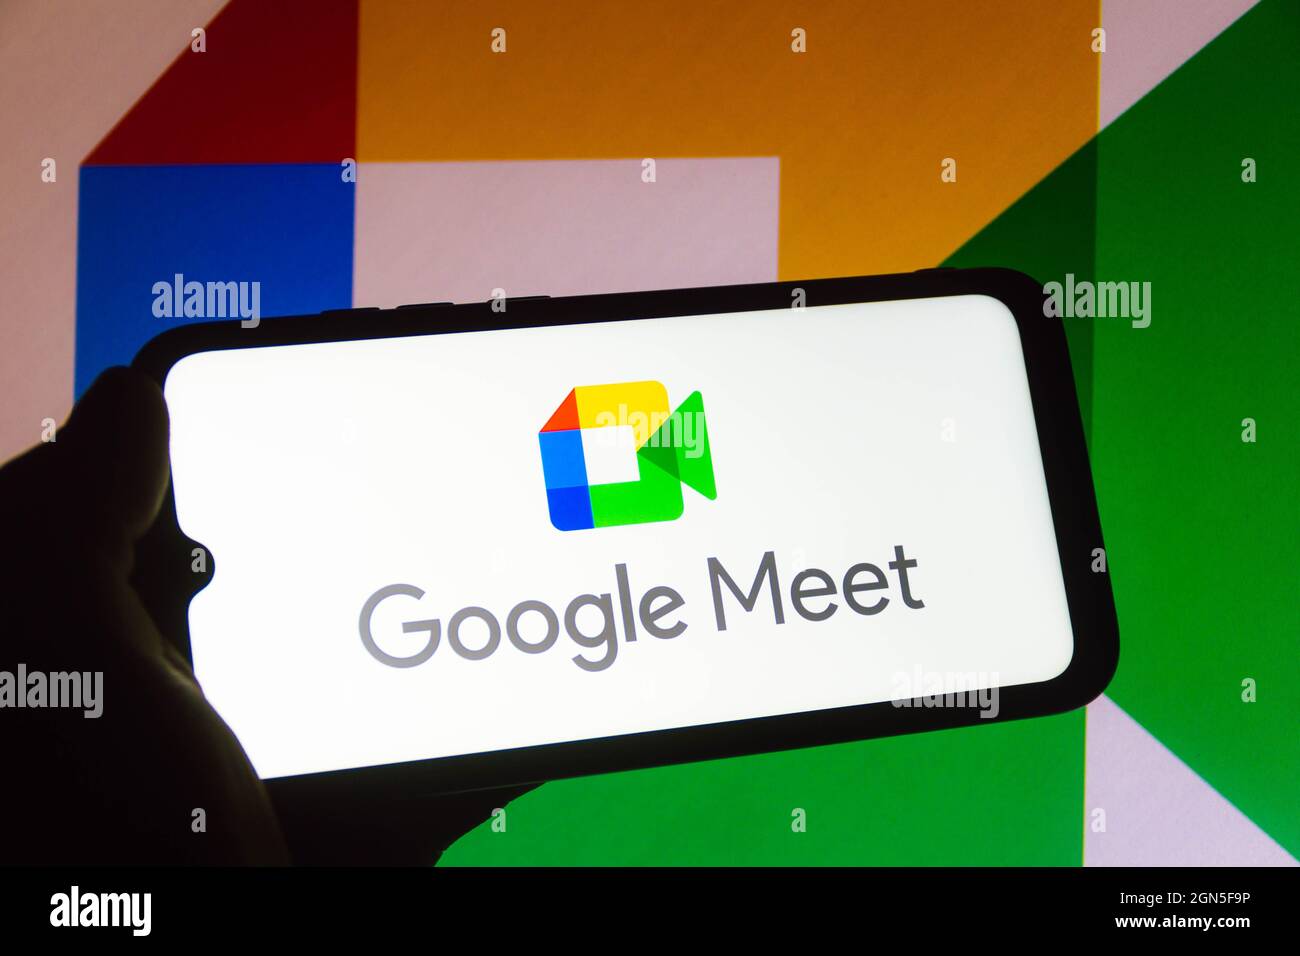 Brasilien. September 2021. In dieser Abbildung ist das Google Meet-Logo auf einem Smartphone zu sehen. Kredit: SOPA Images Limited/Alamy Live Nachrichten Stockfoto